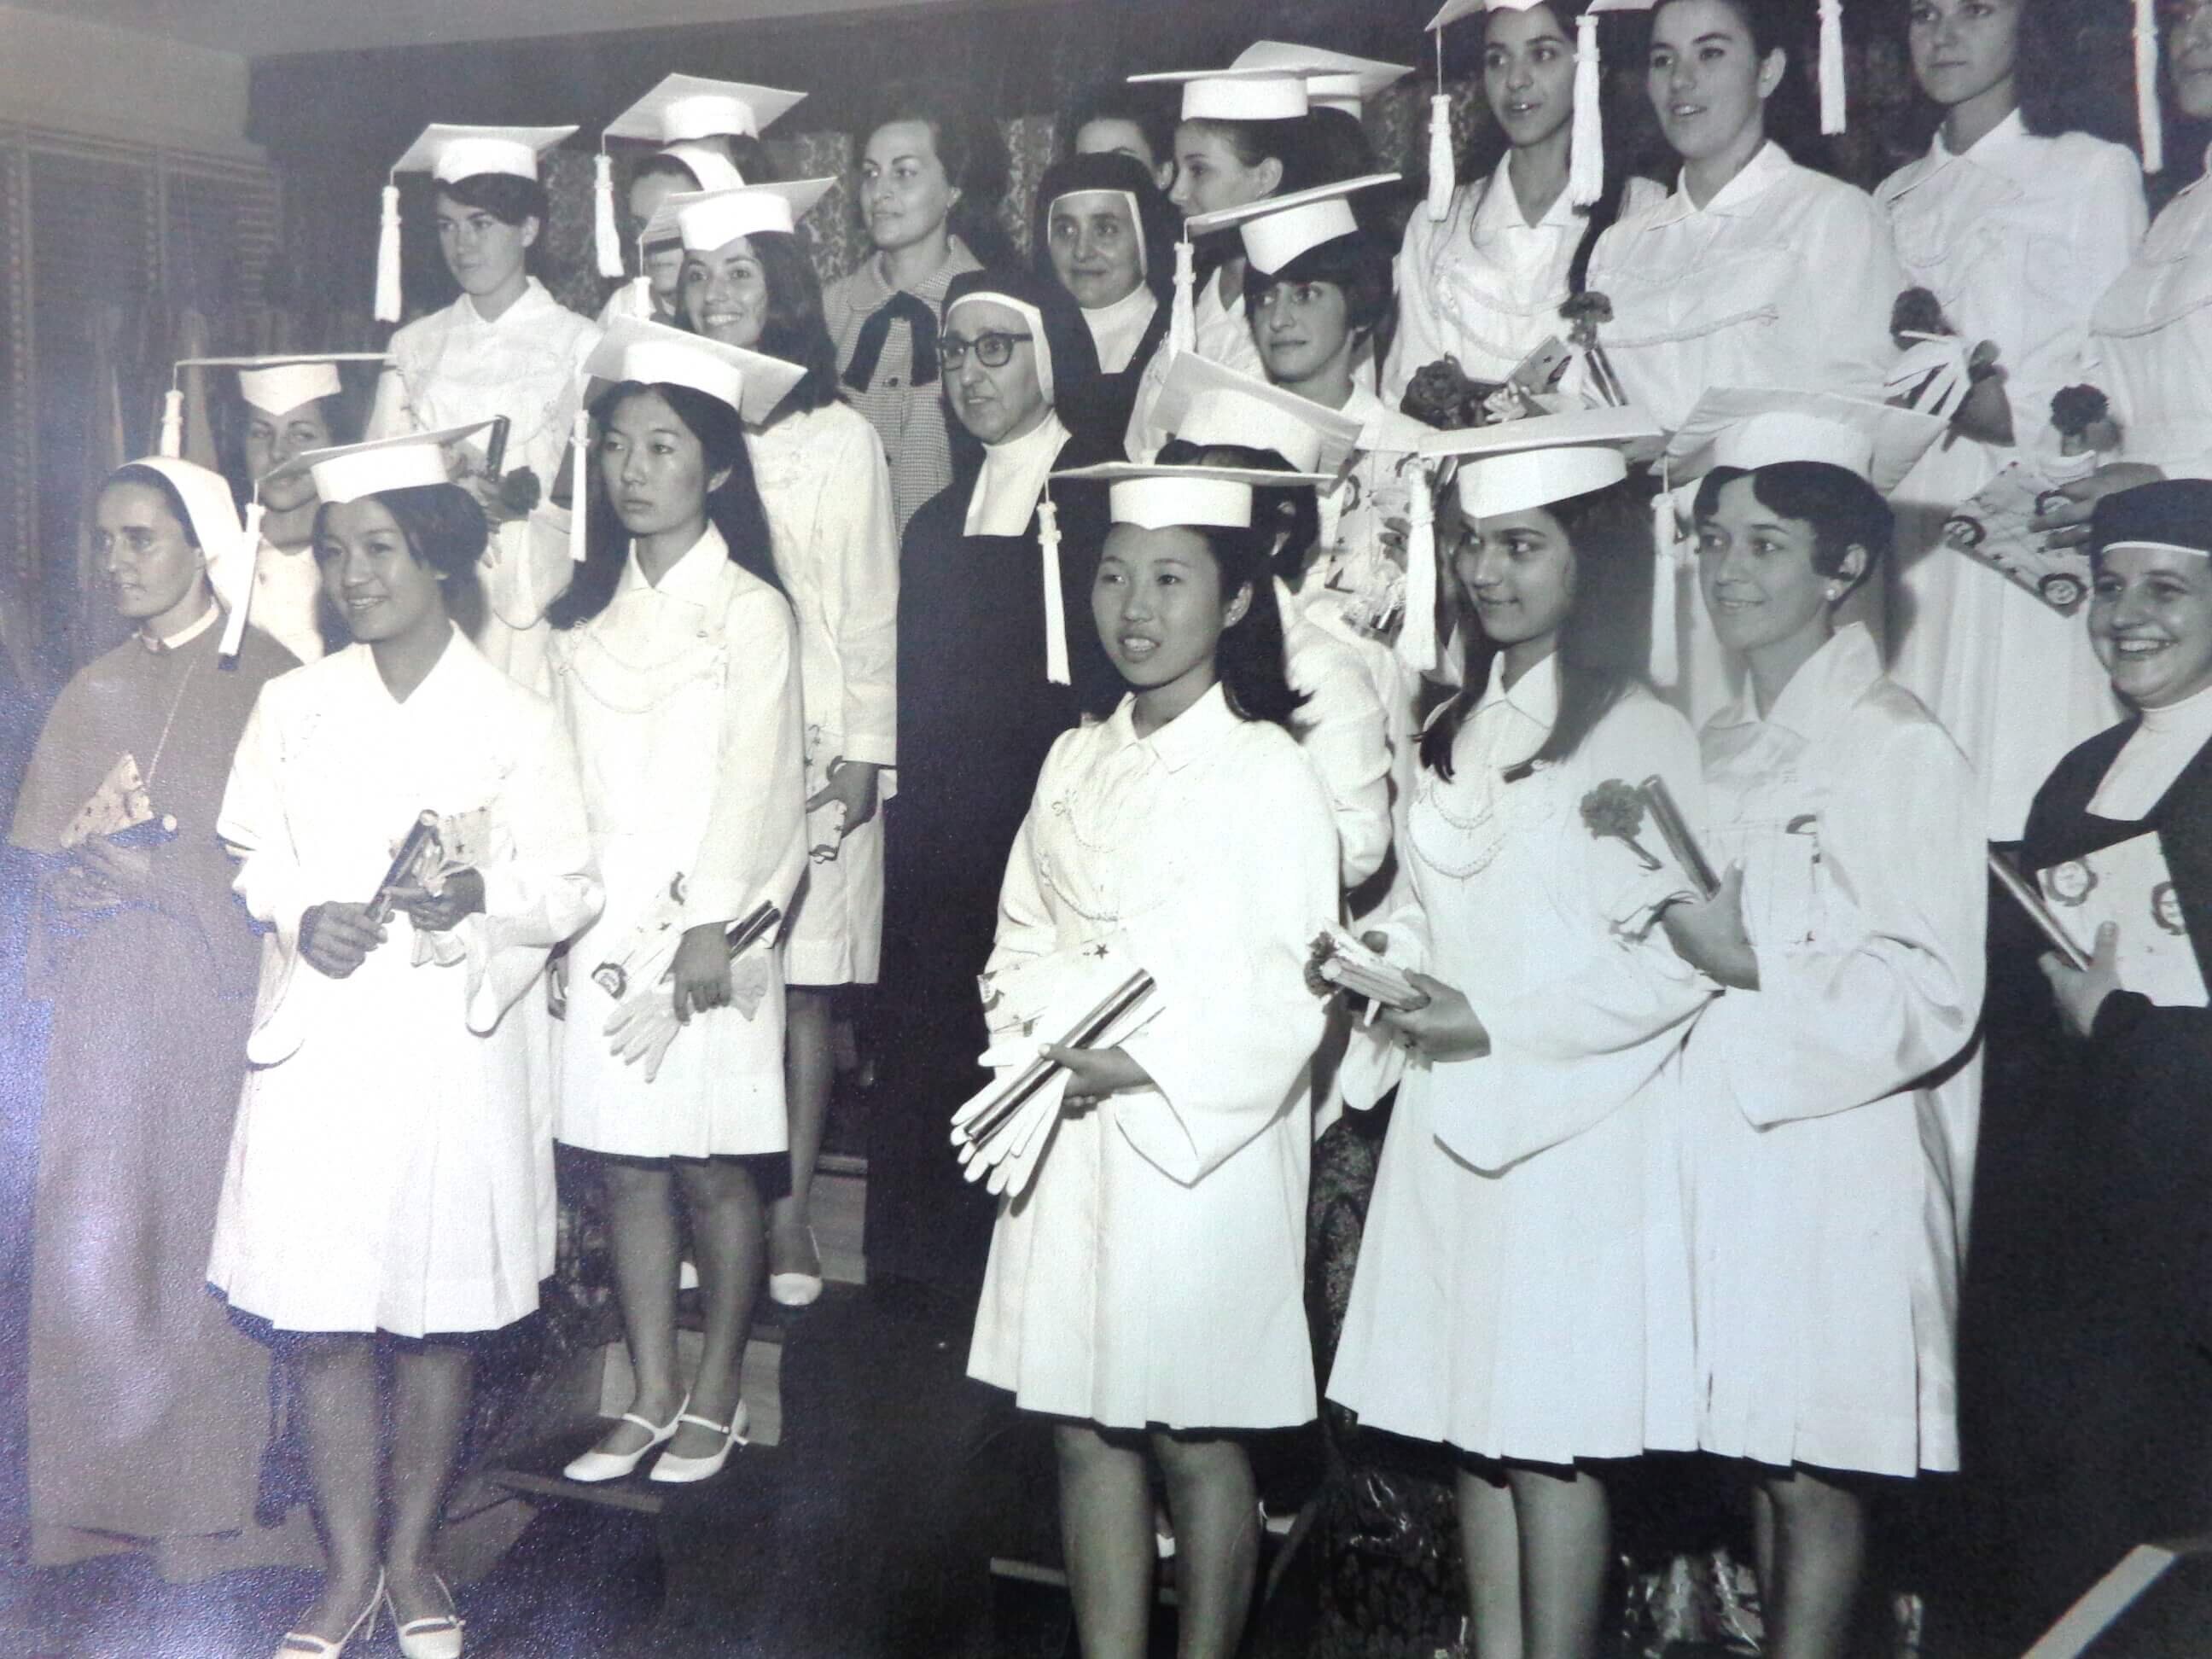 Formandas do Colégio Santa Cruz - Década de 1960